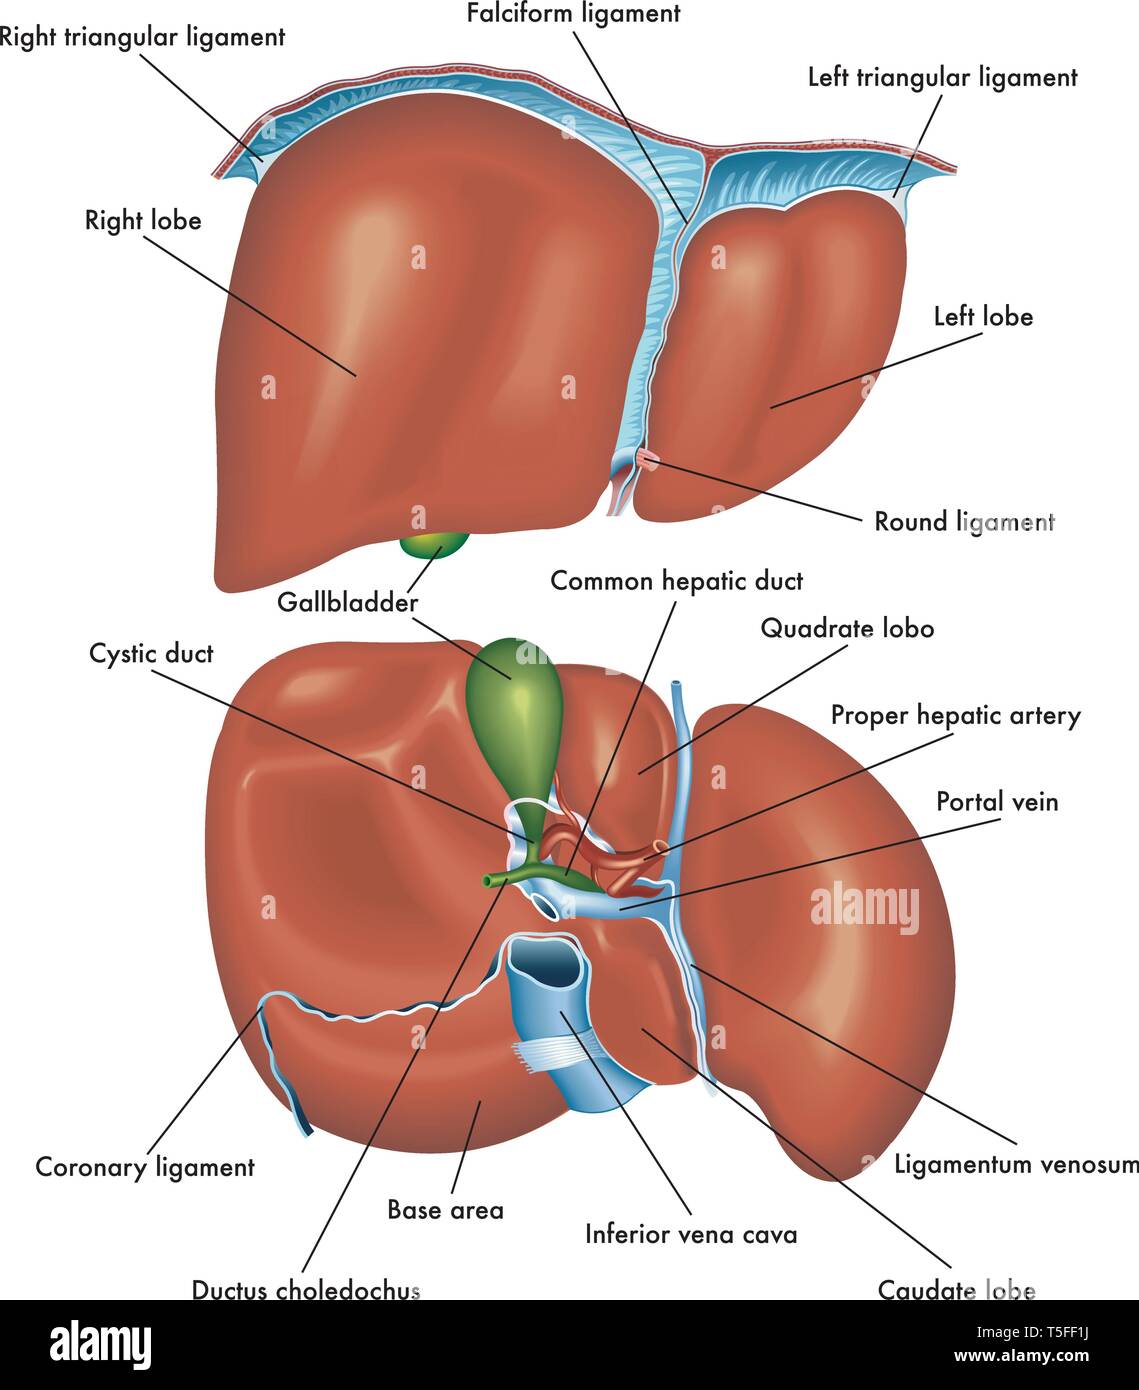 Medical illustrazione che mostra l'anatomia della vista frontale e vista posteriore del fegato con la descrizione delle varie parti. Illustrazione Vettoriale